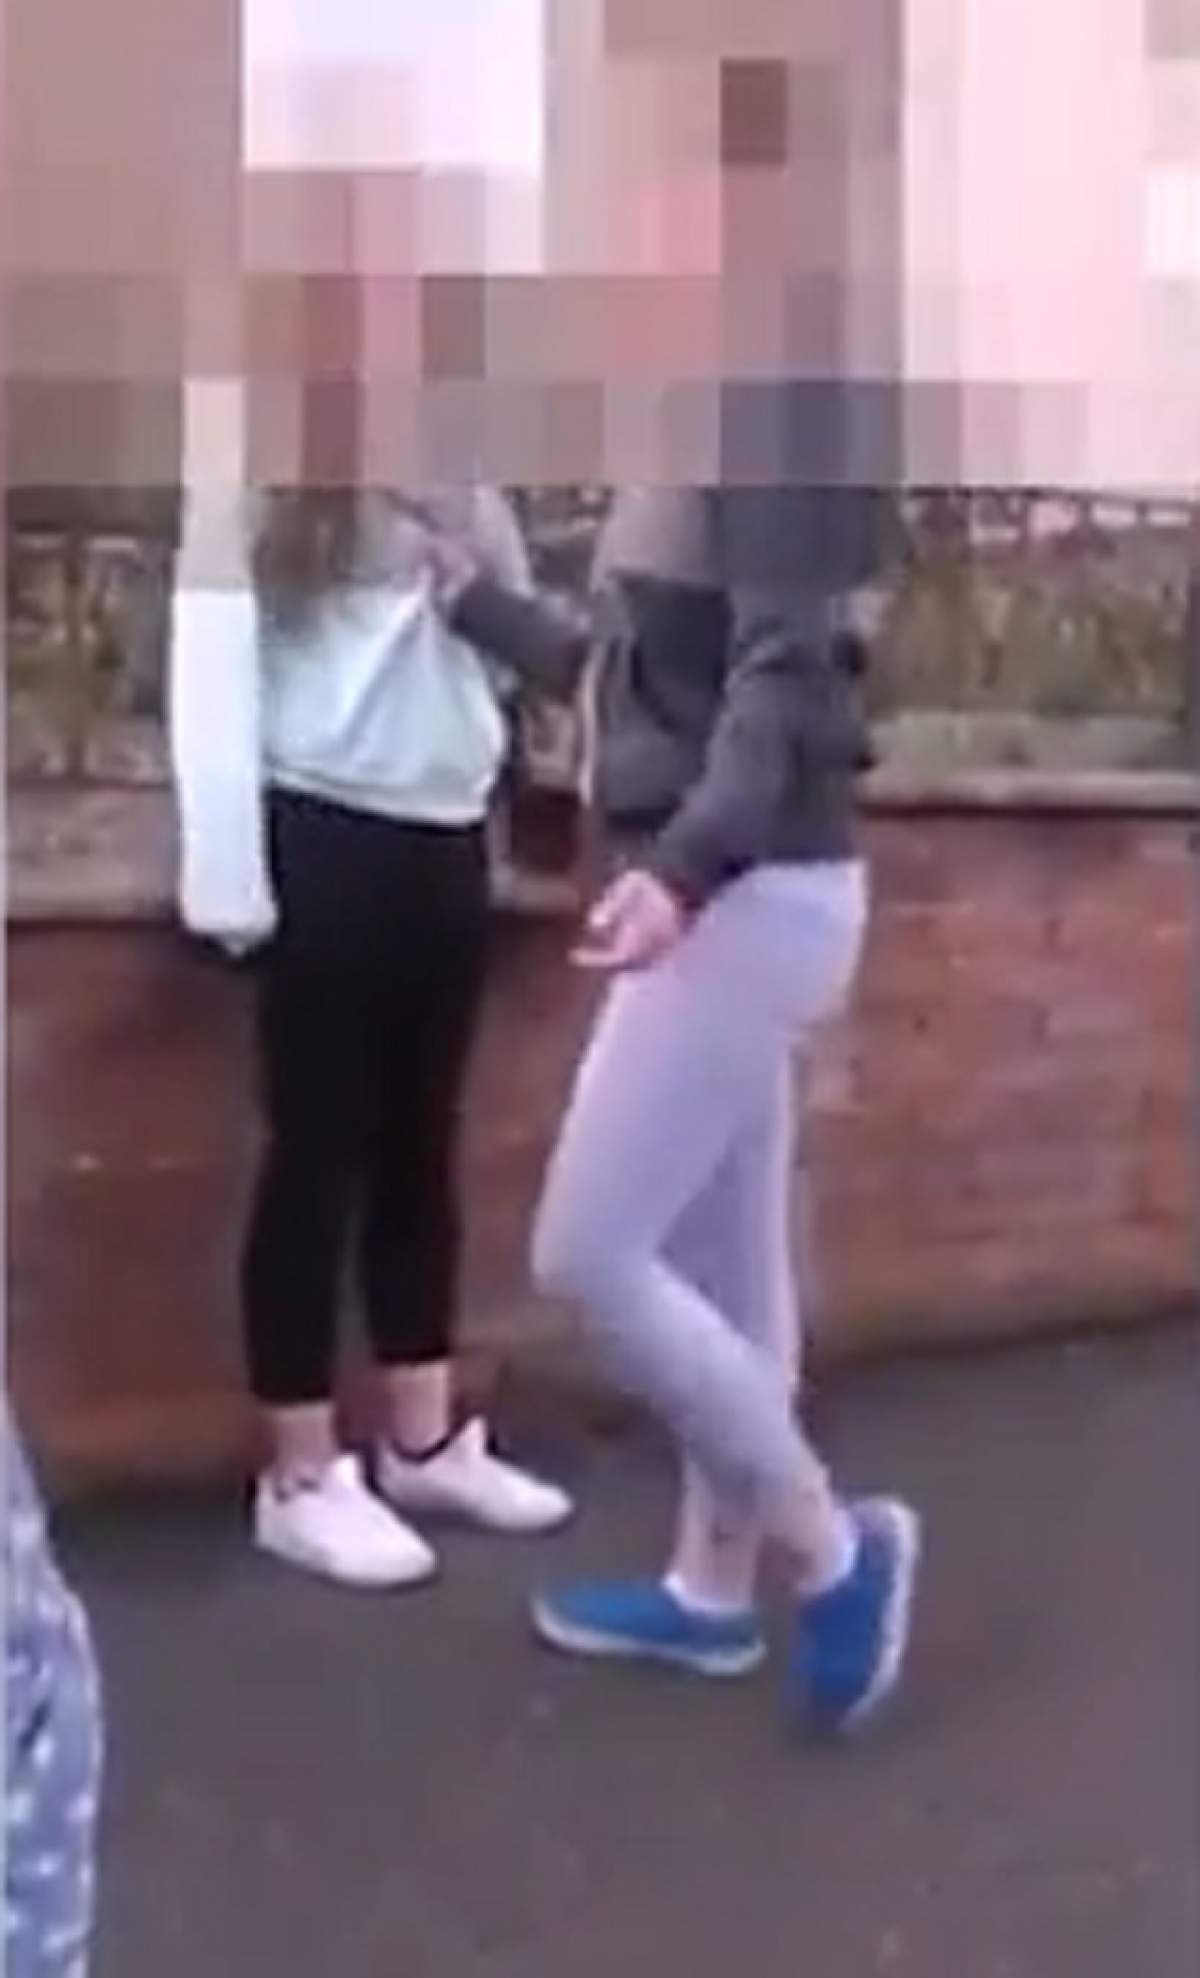 VIDEO / Imagini cu puternic impact emoţional! O adolescentă este bătută şi dată cu capul de asfalt de o colegă de şcoală